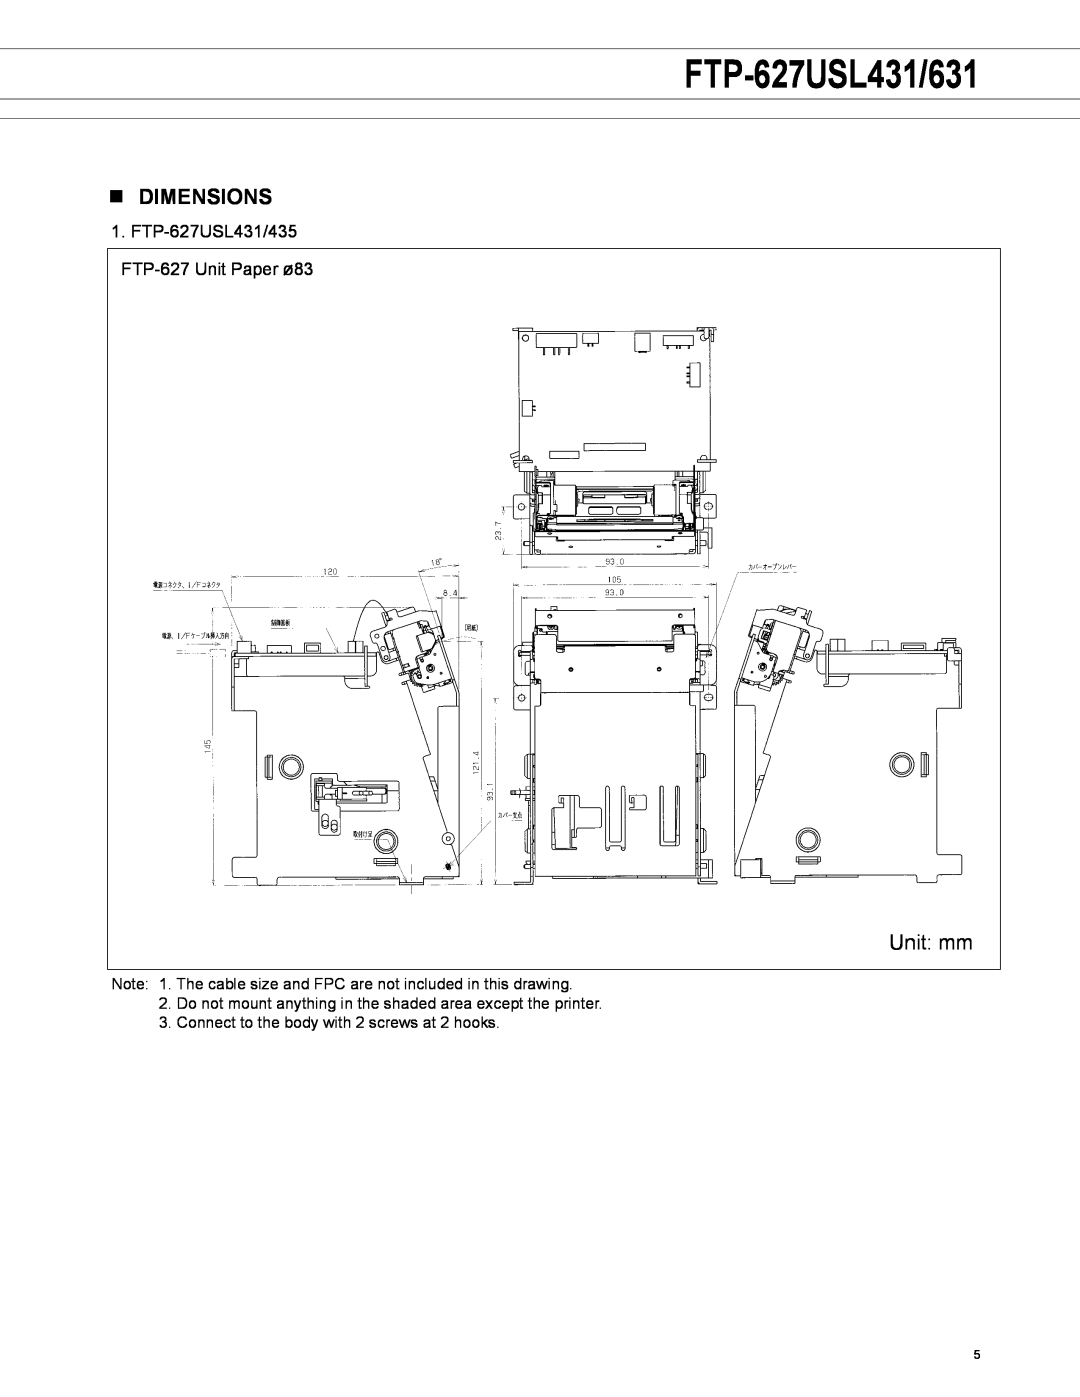 Fujitsu FTP-627USL631 manual n dimensions, Unit mm, FTP-627USL431/631 